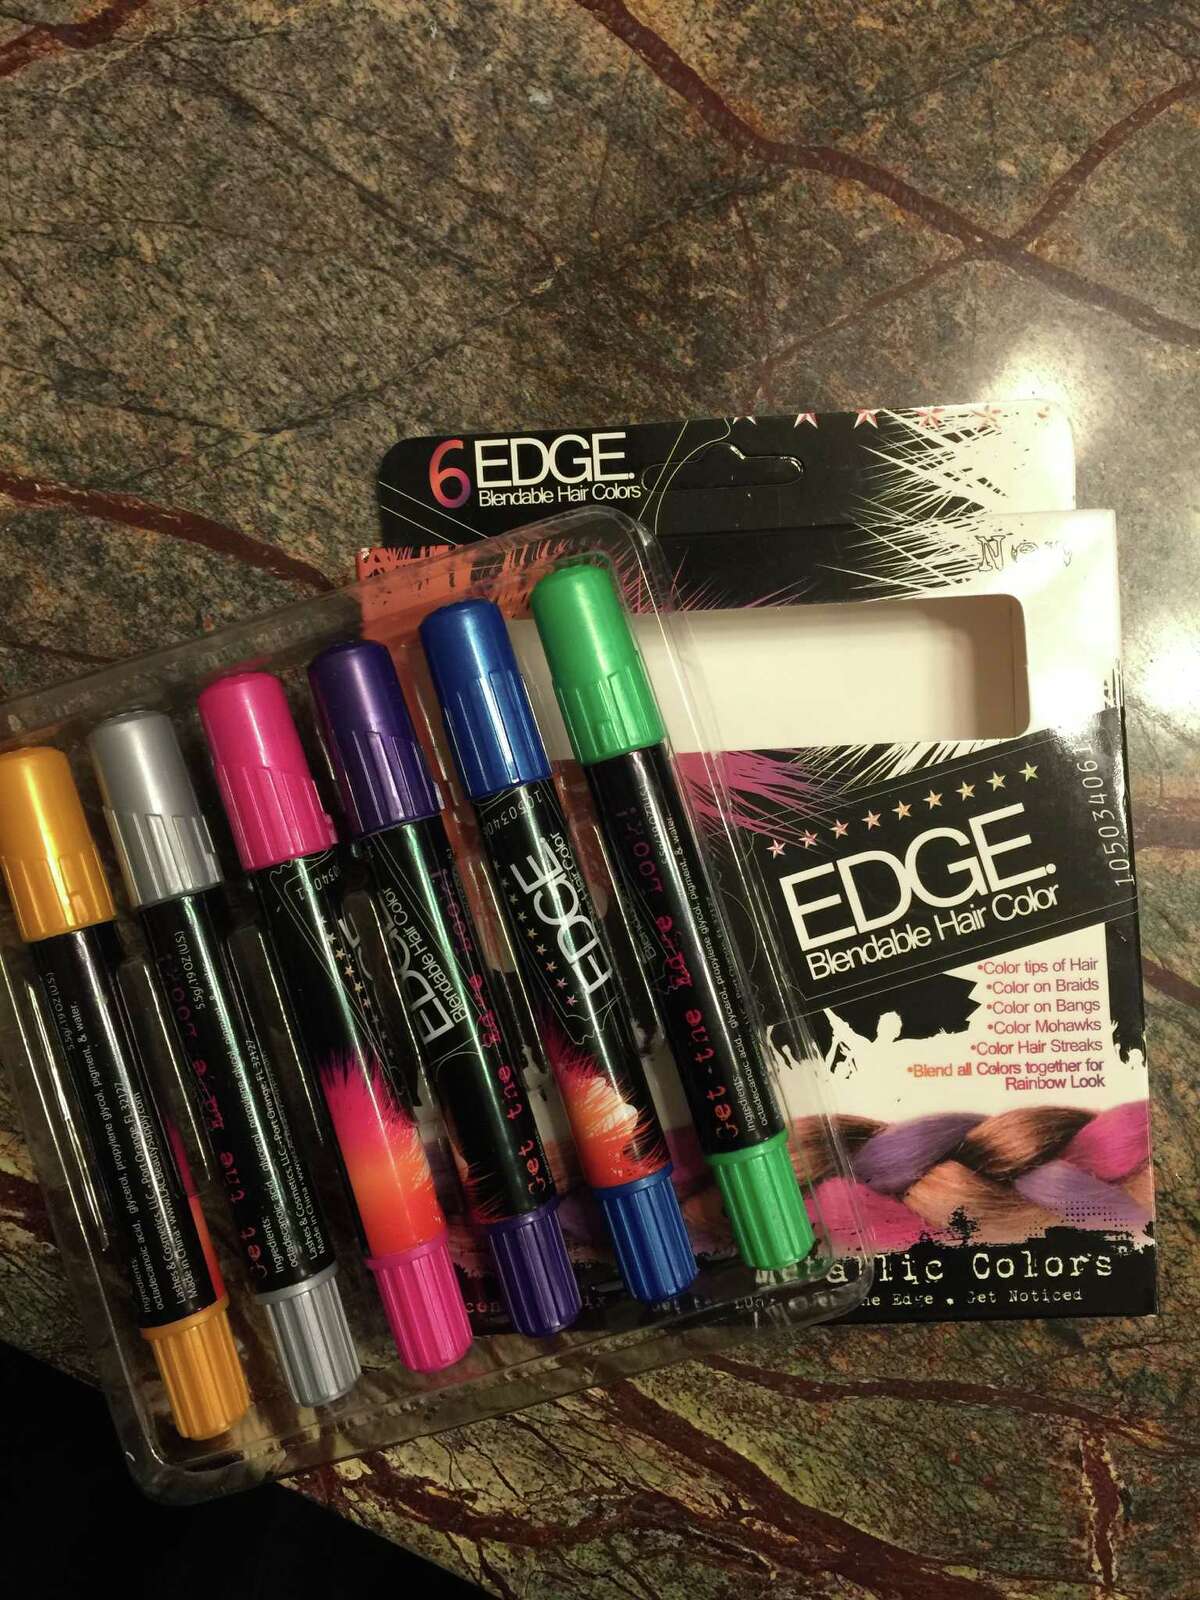 Edge Metallic Glitter Hair Chalks, $11.95 on Amazon.com.